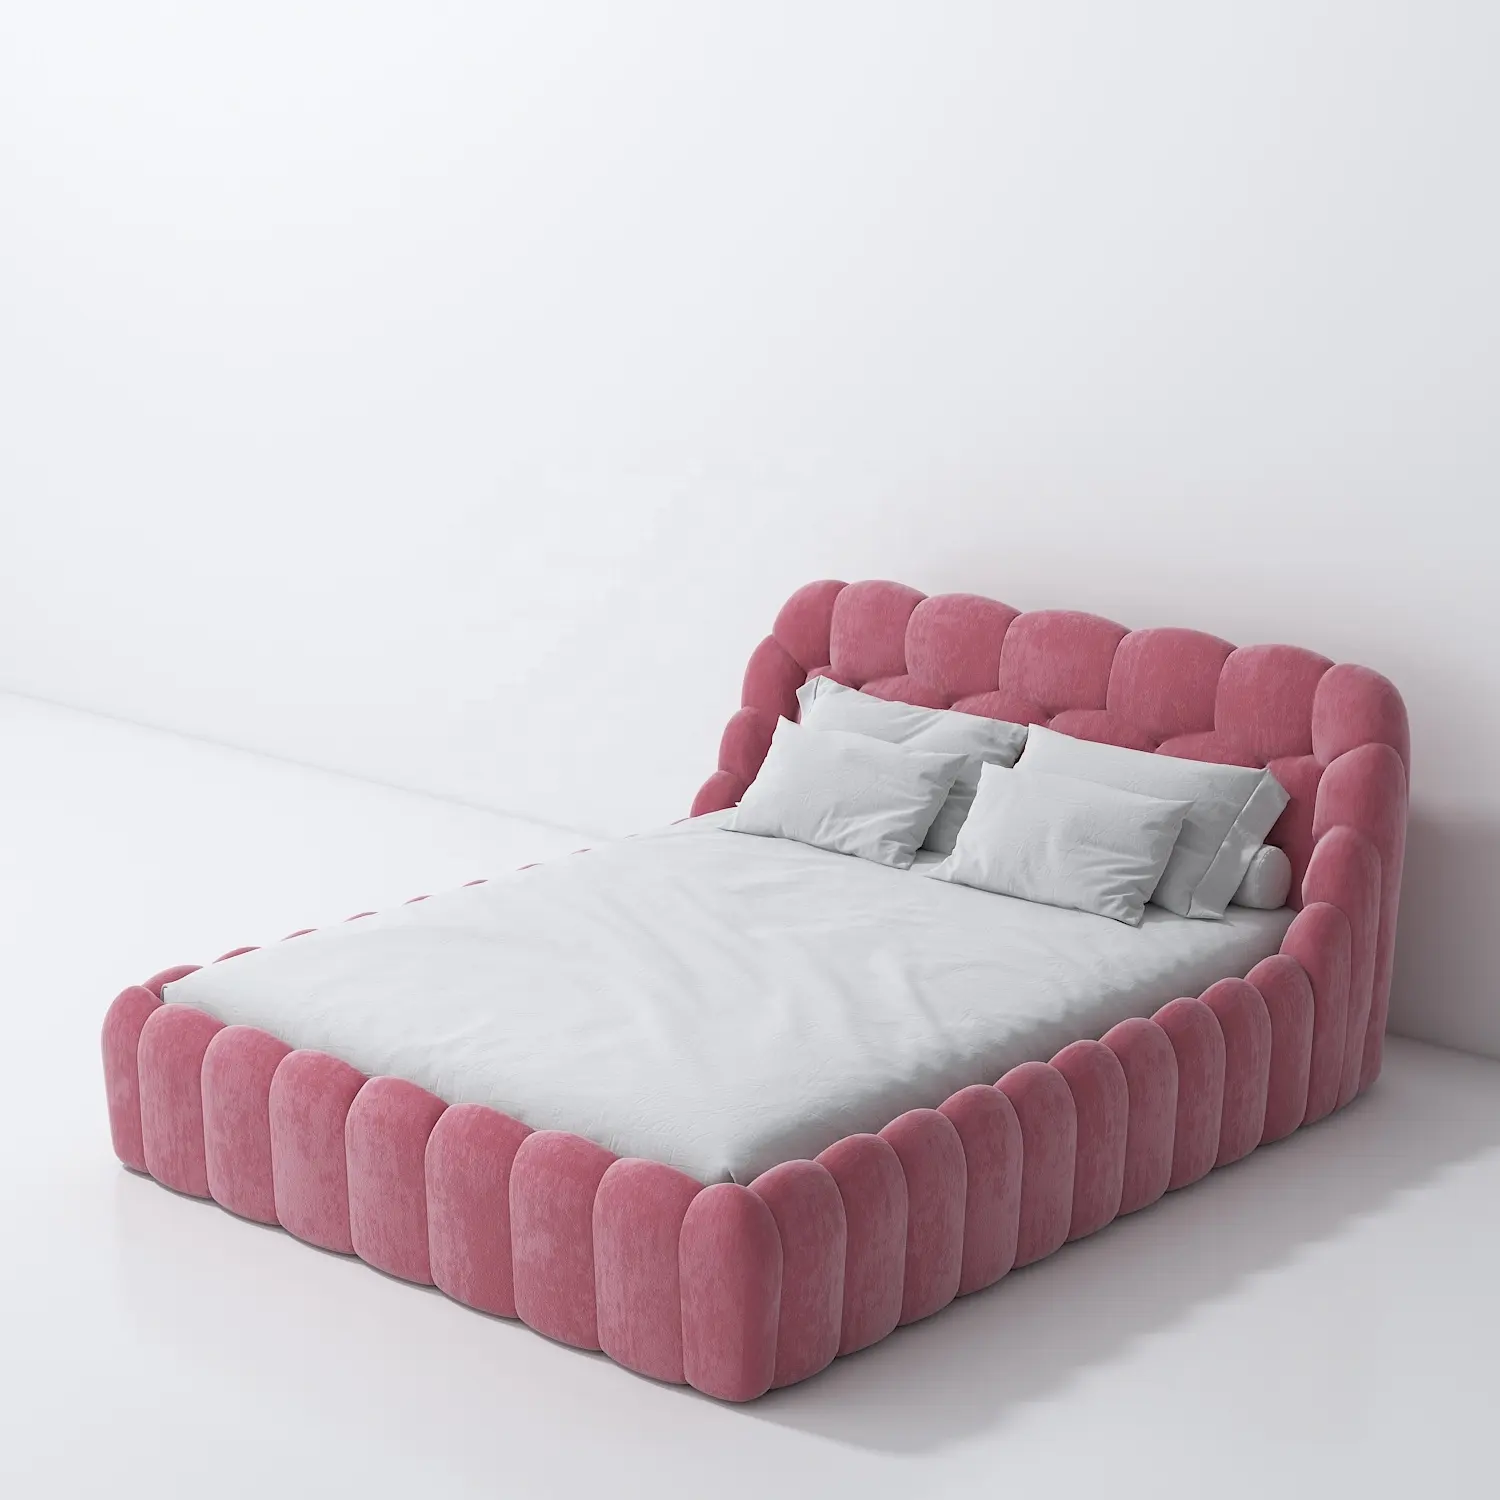 Marco de cama tapizado de tela personalizado, resistente y duradero